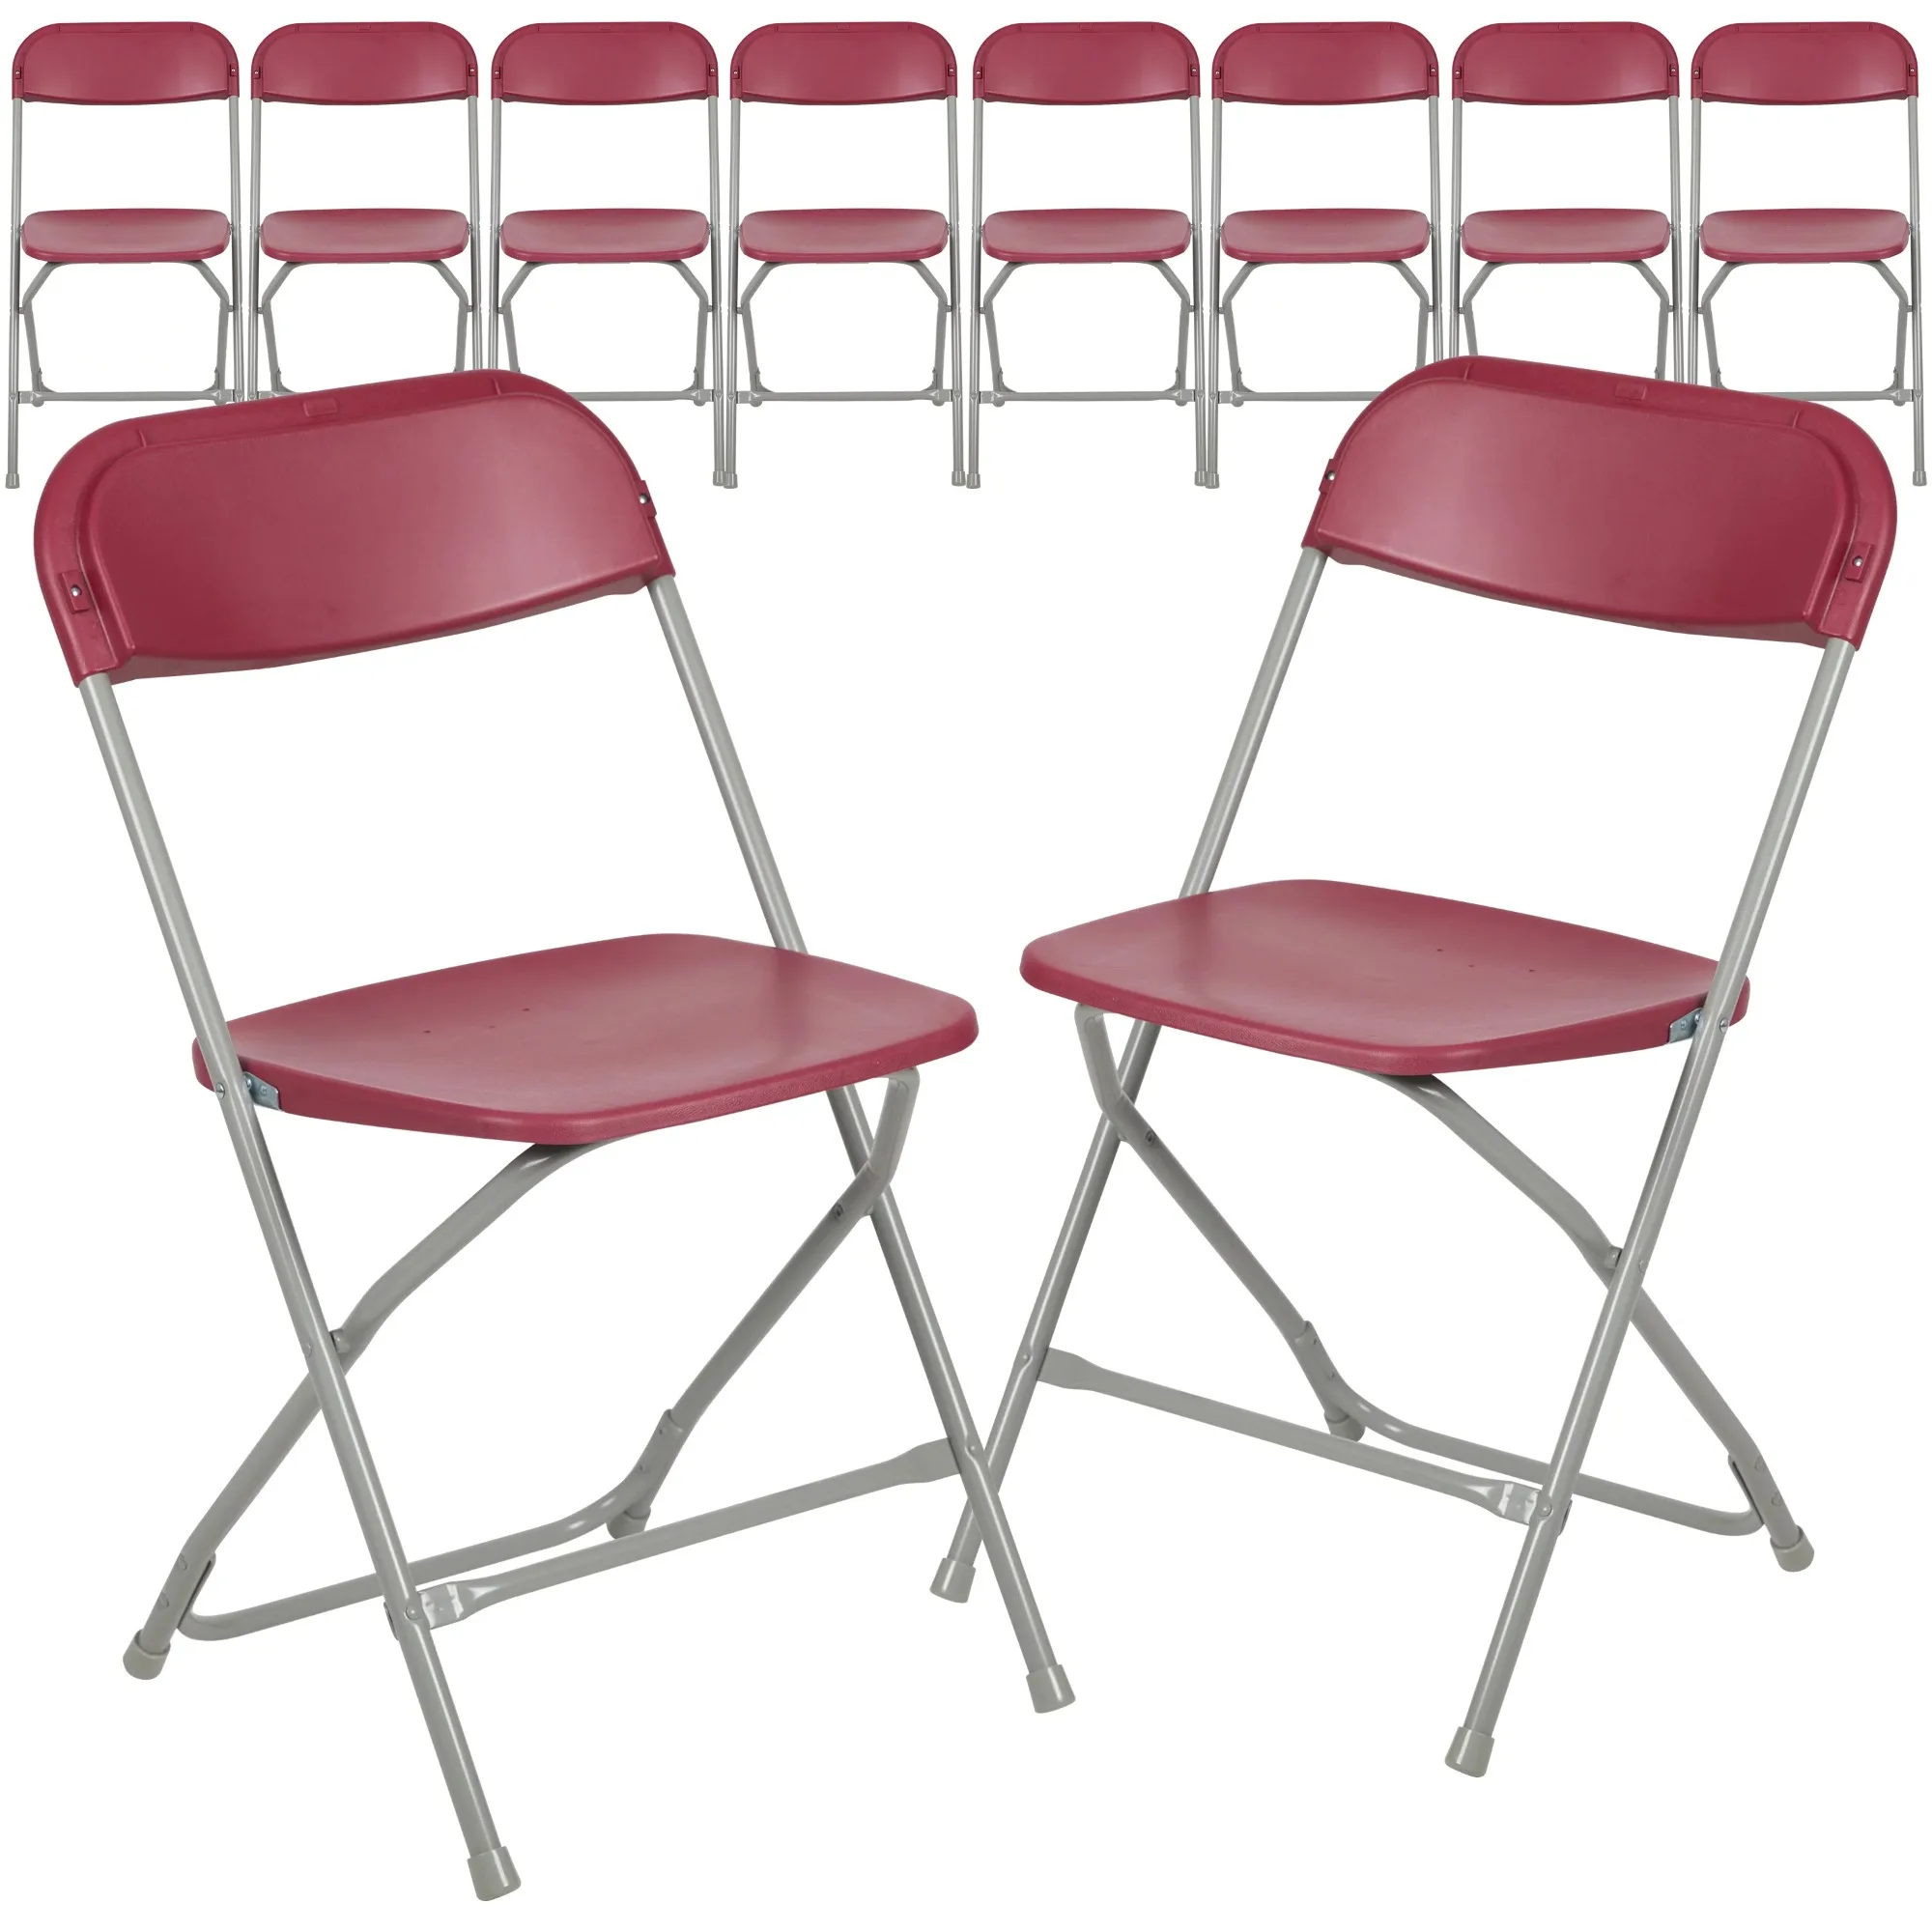 Пластиковый складной стул - Красный - 10 упаковок, грузоподъемность 650 фунтов, удобное кресло для мероприятий-Легкий складной стул